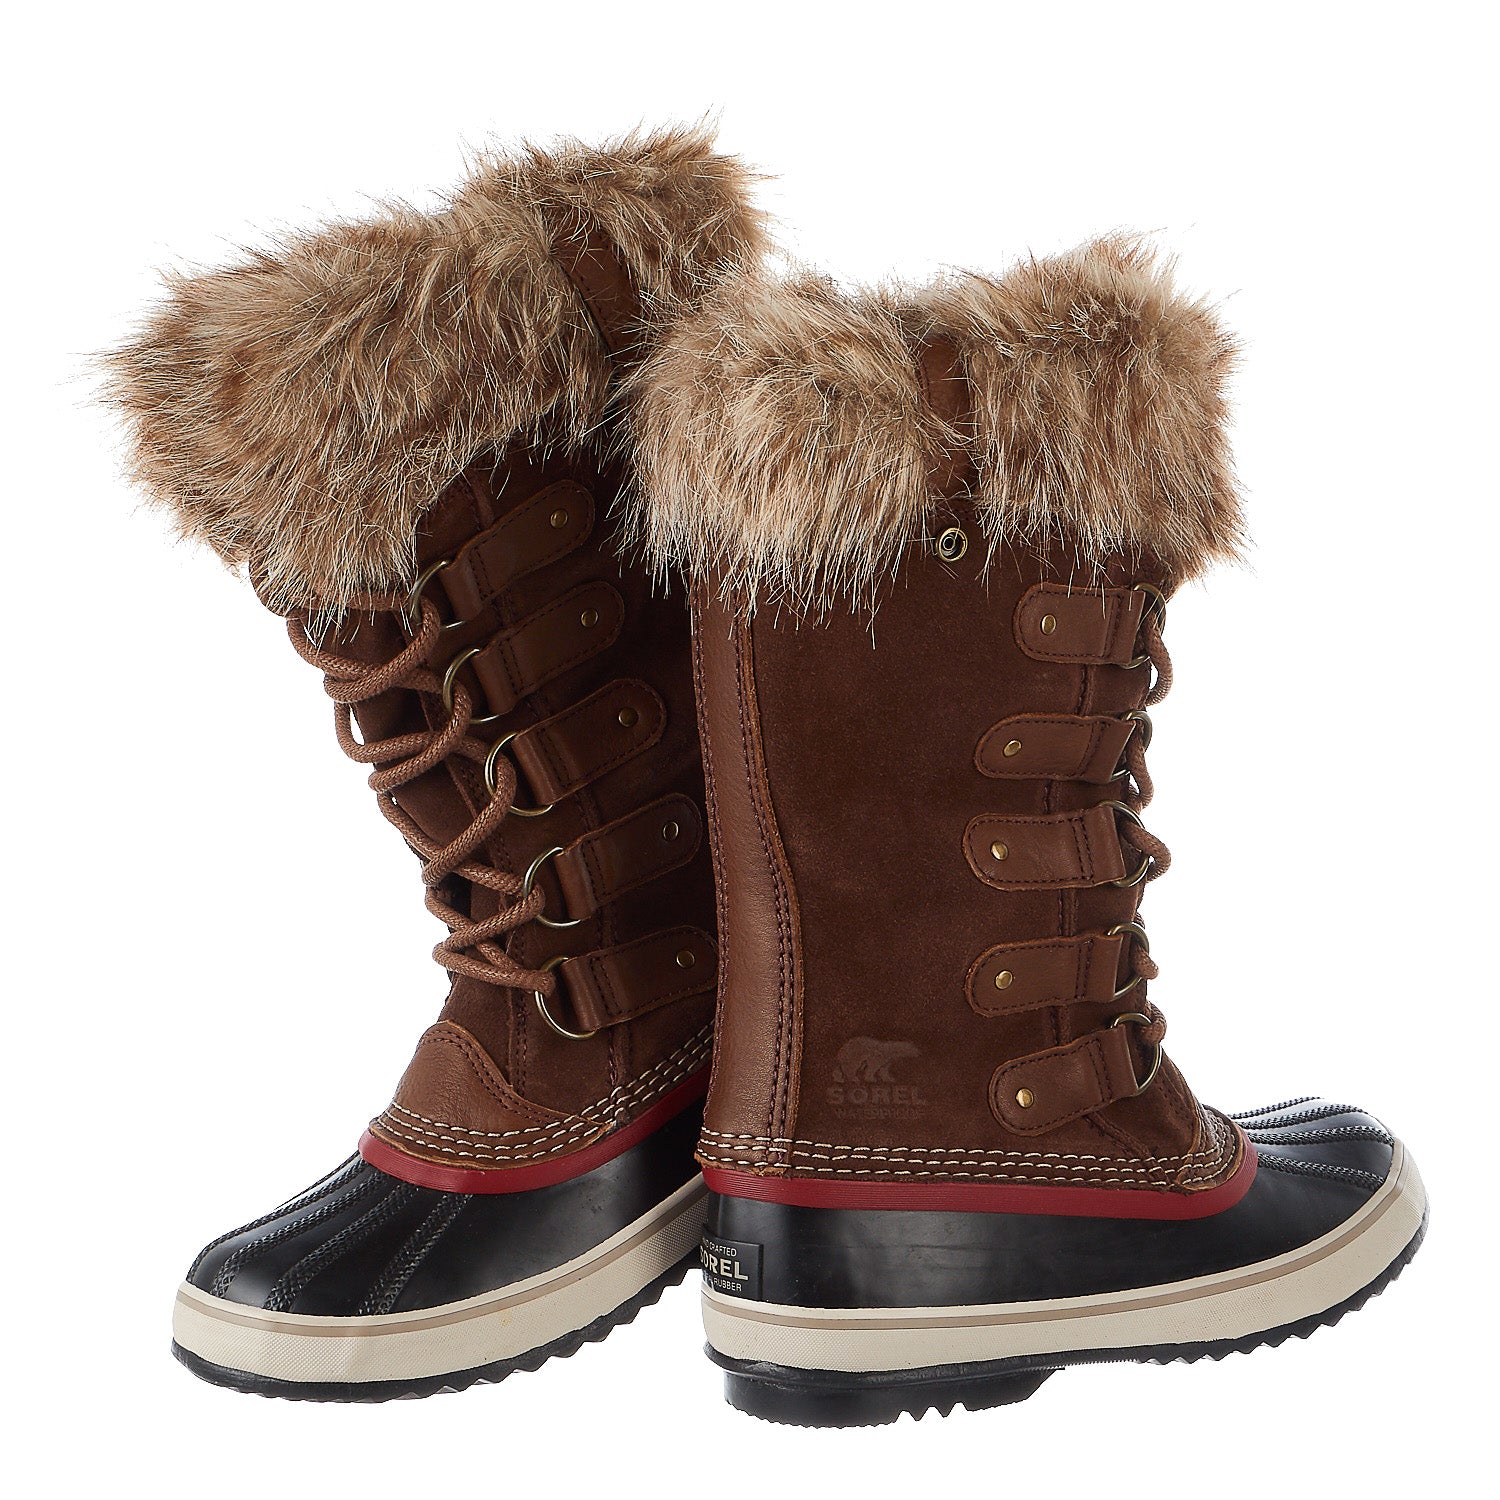 sorel joan of arctic boots